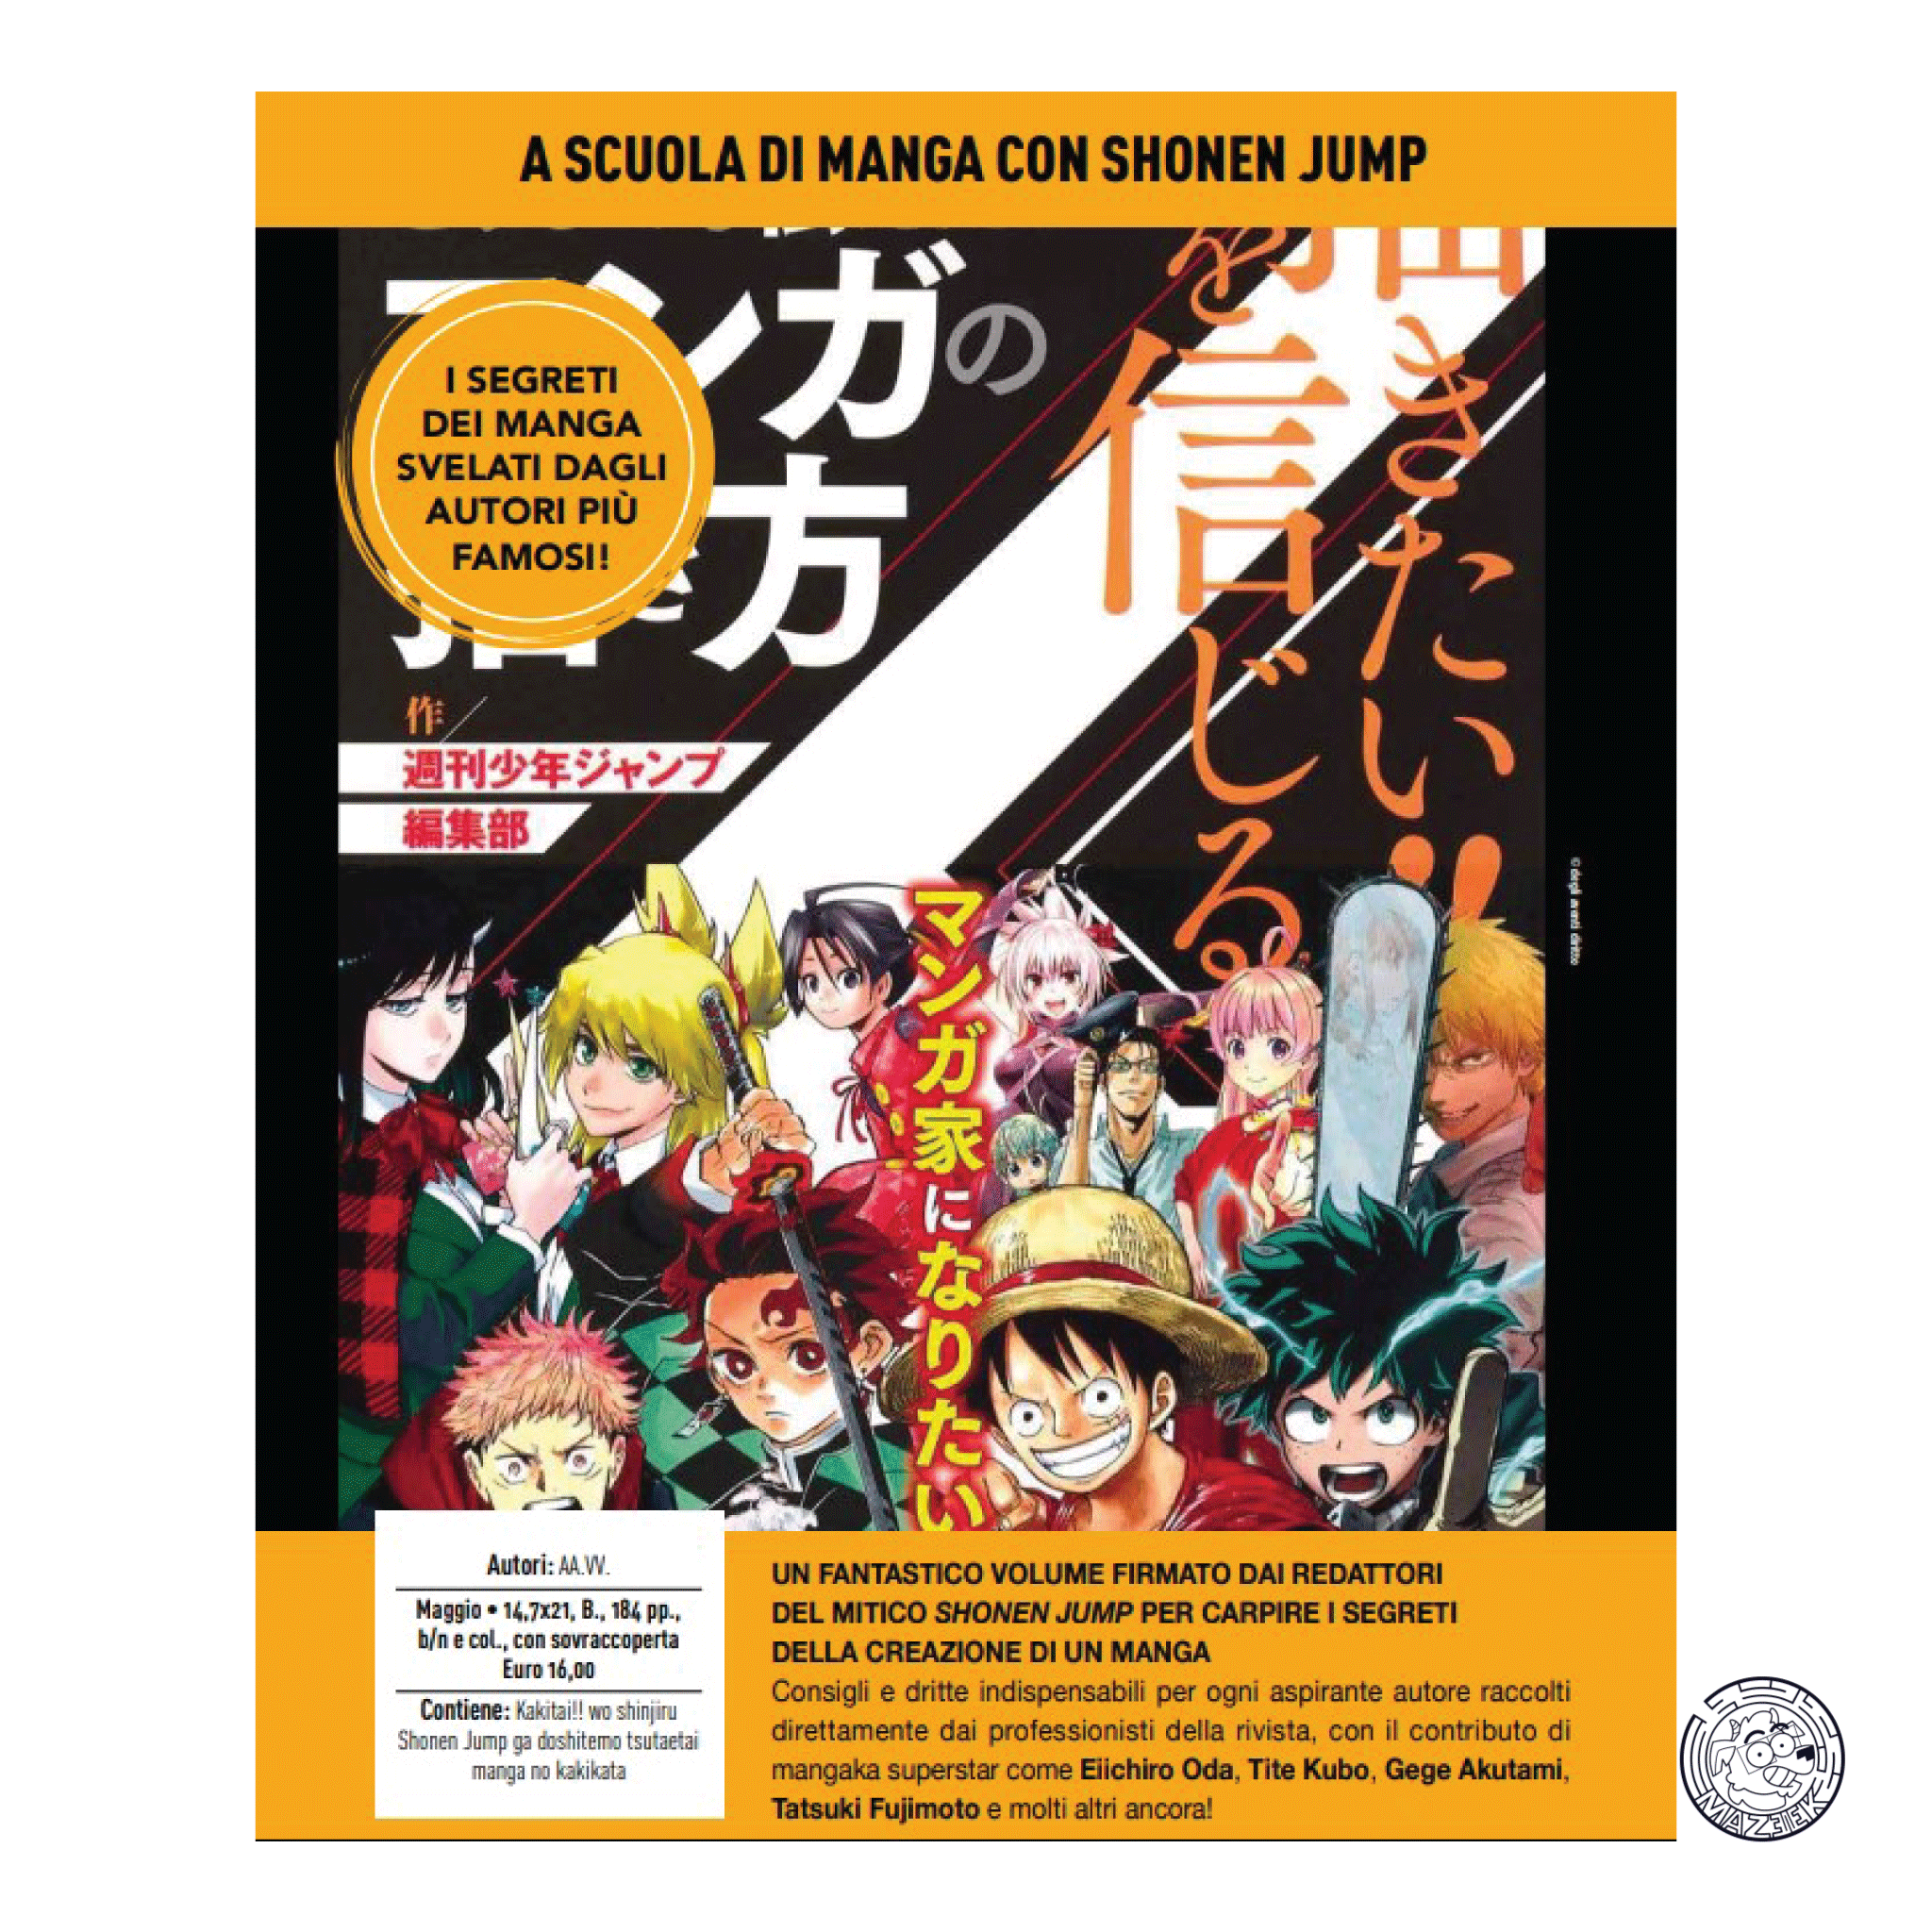 A Scuola di Manga con Shonen Jump